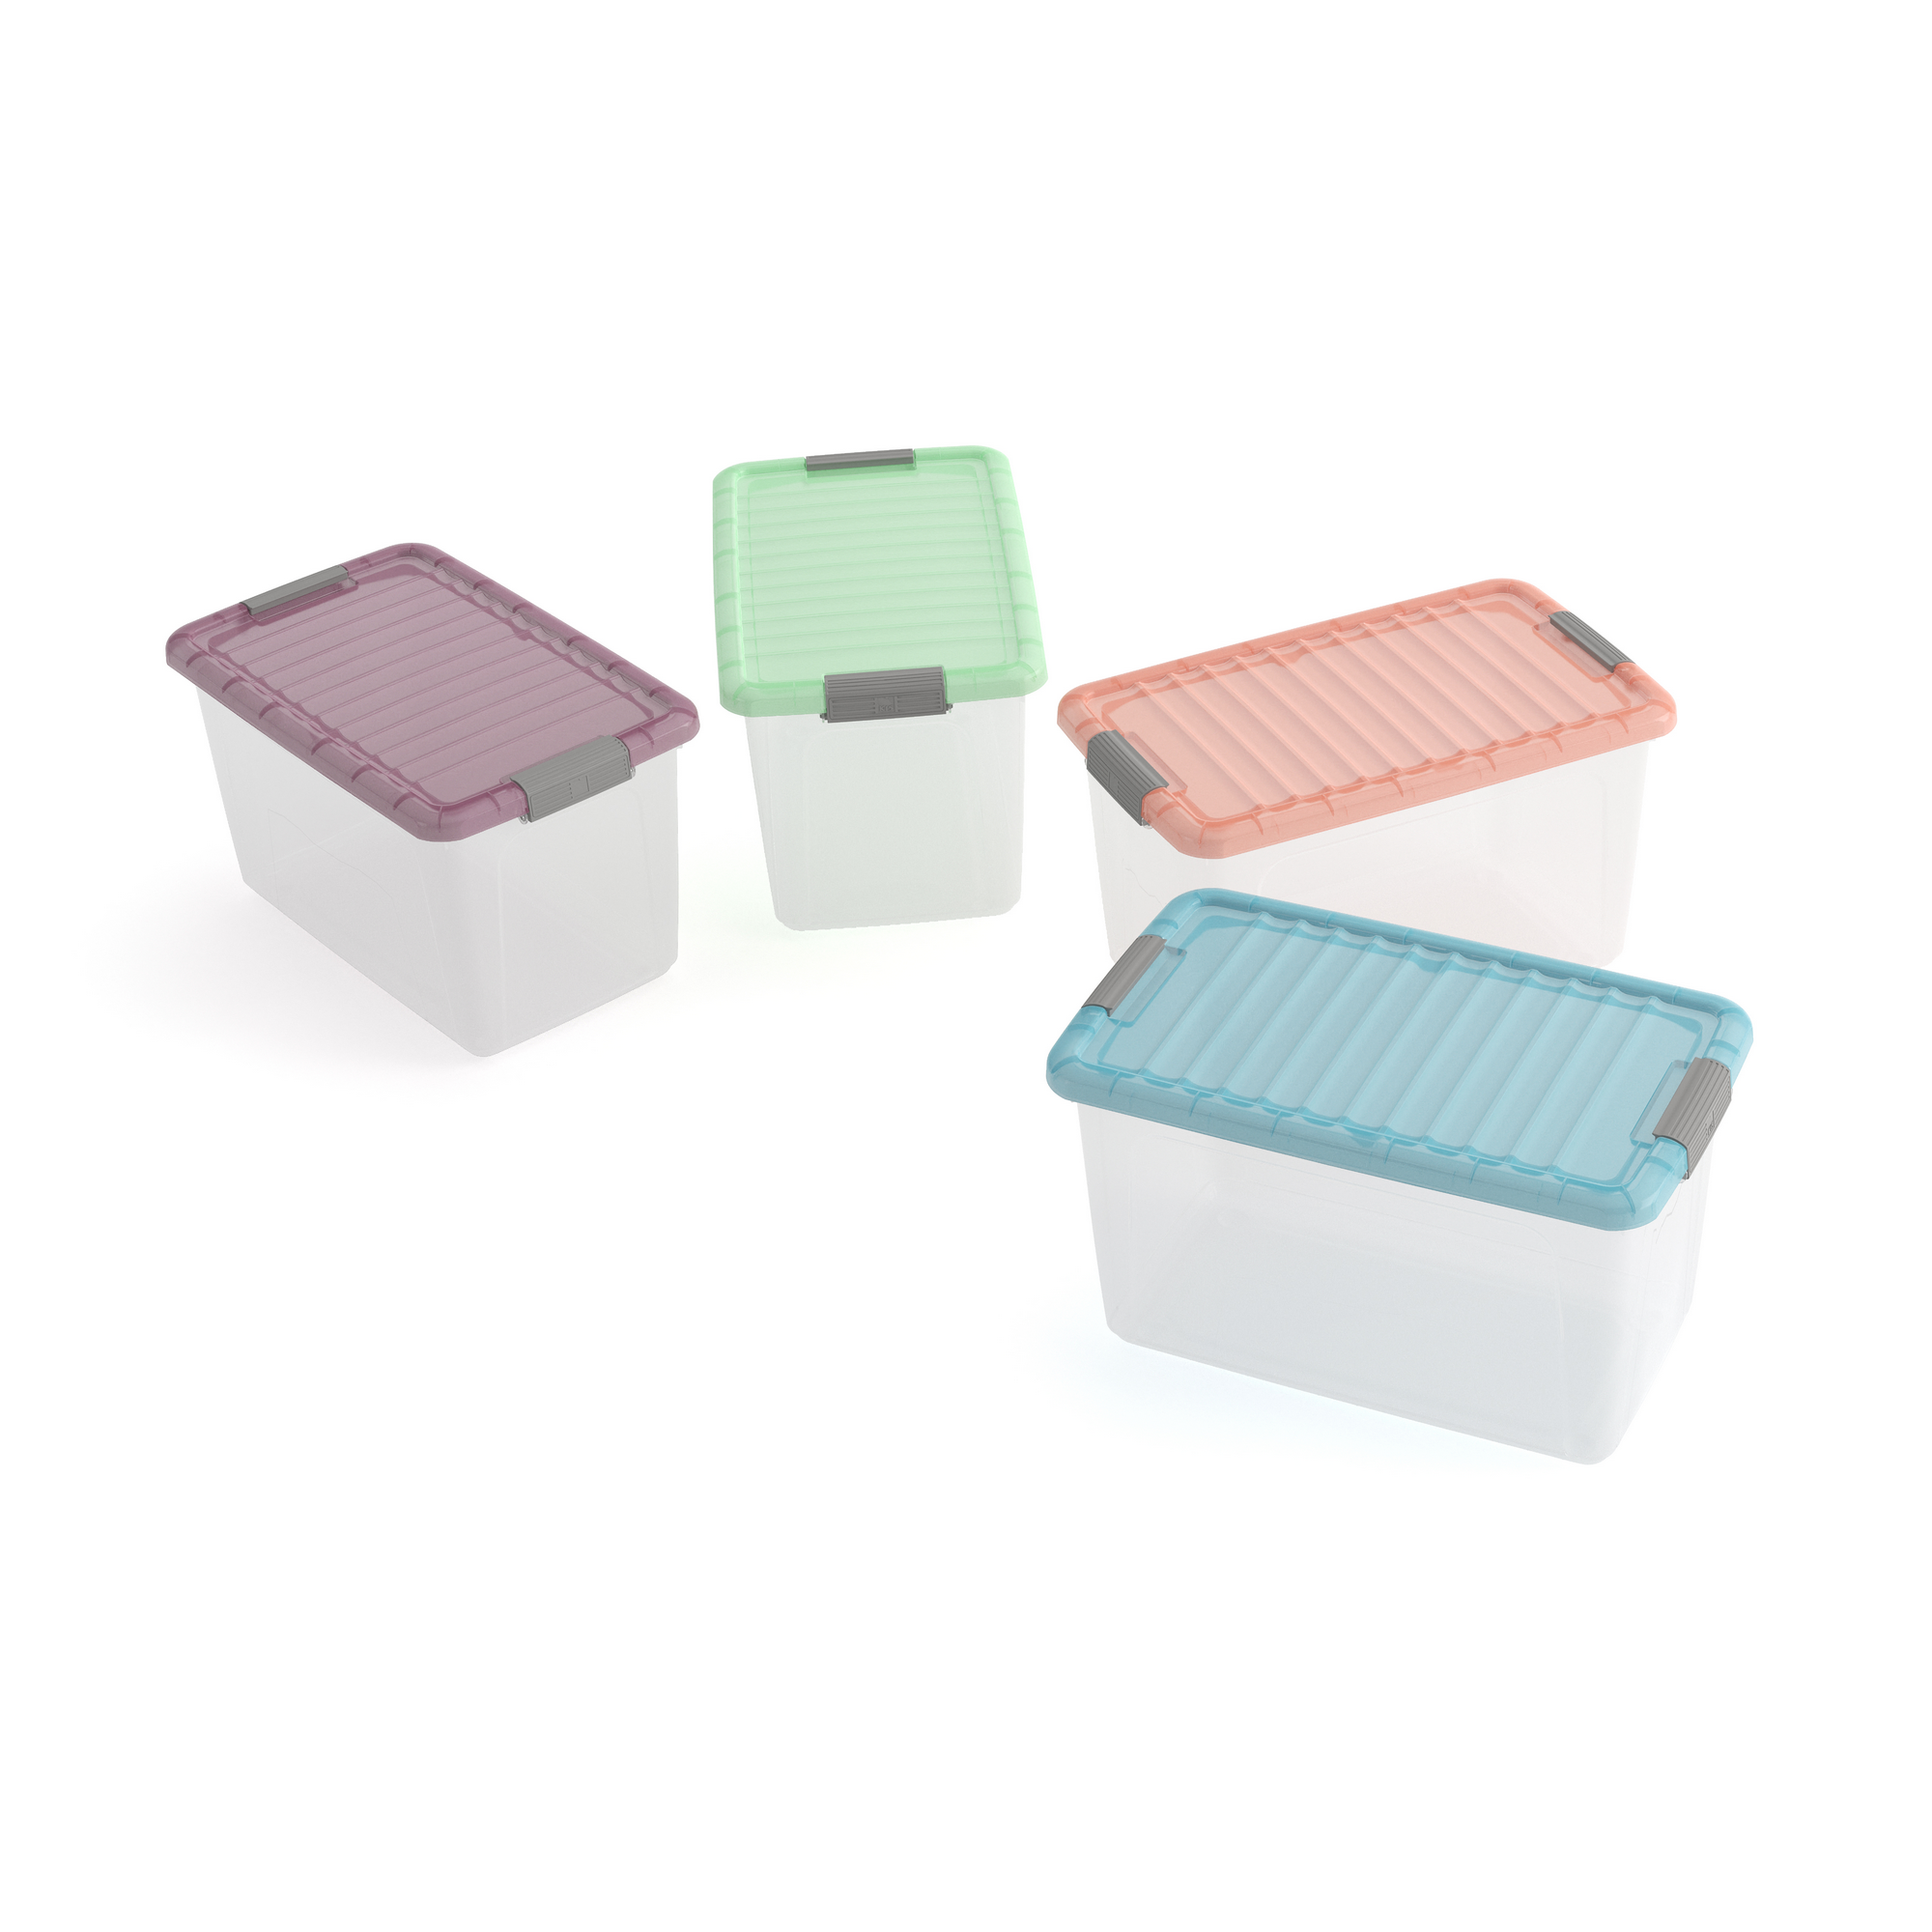 Aufbewahrung 'W Box' L Trend Transparent/Neo Mint 50 l 56,5 x 39 x 31,5 cm + product picture